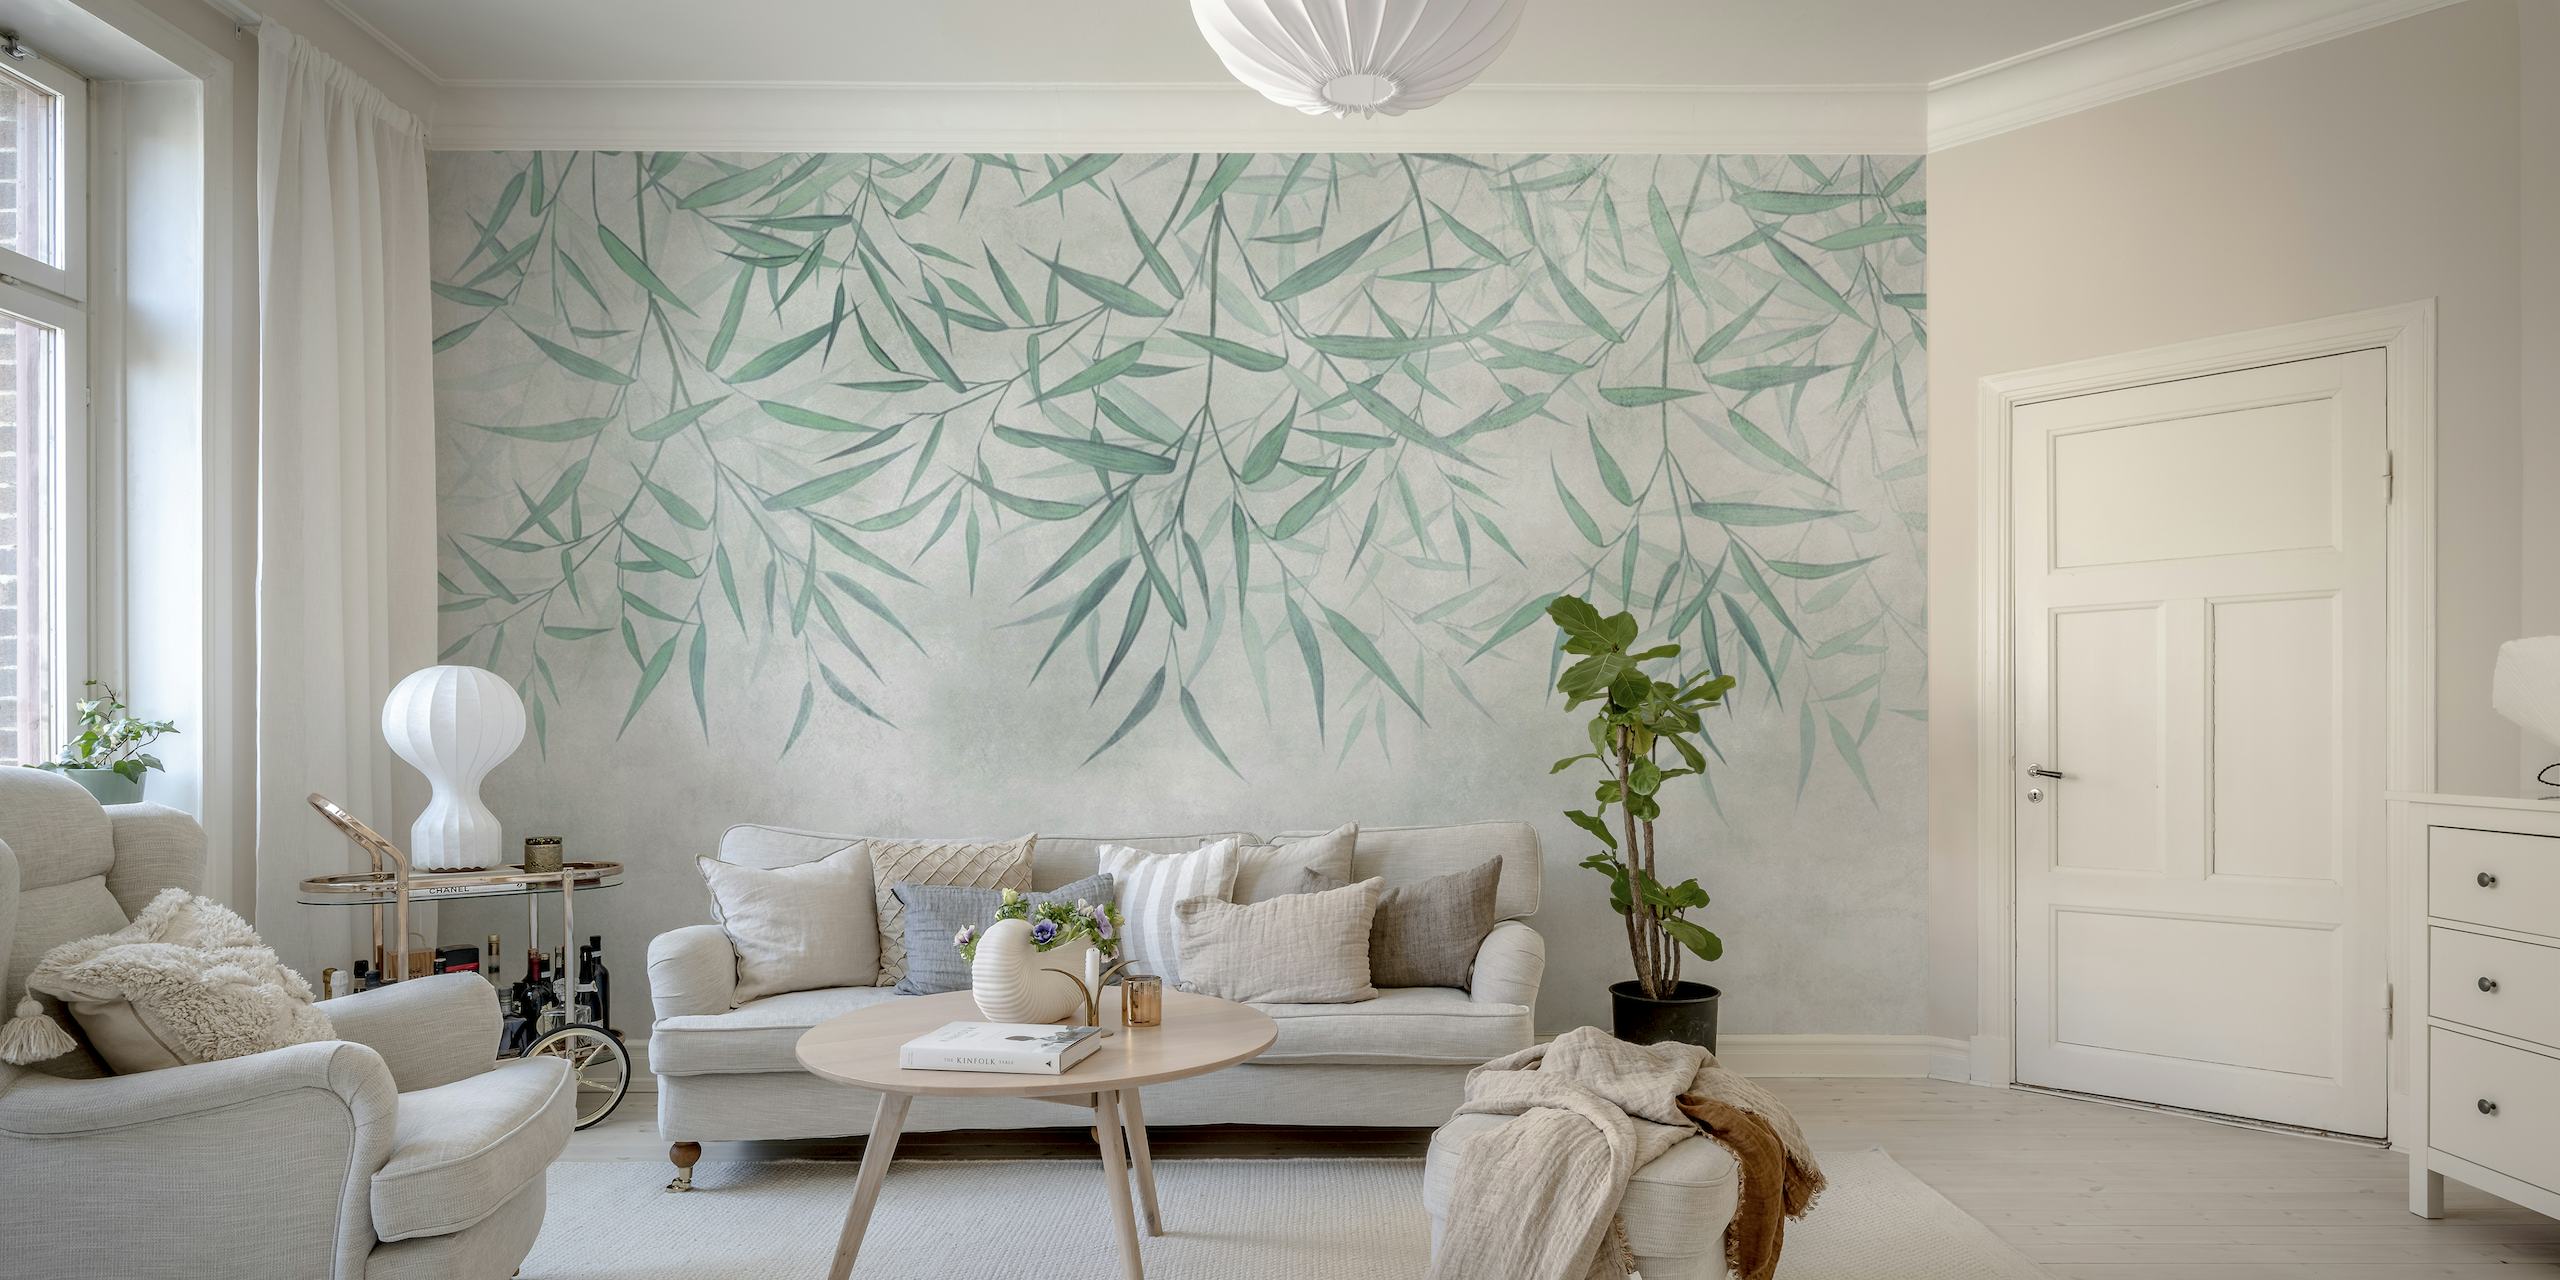 Fotomural de hojas de bambú colgantes con un fondo de textura suave, creando un ambiente tranquilo y natural.